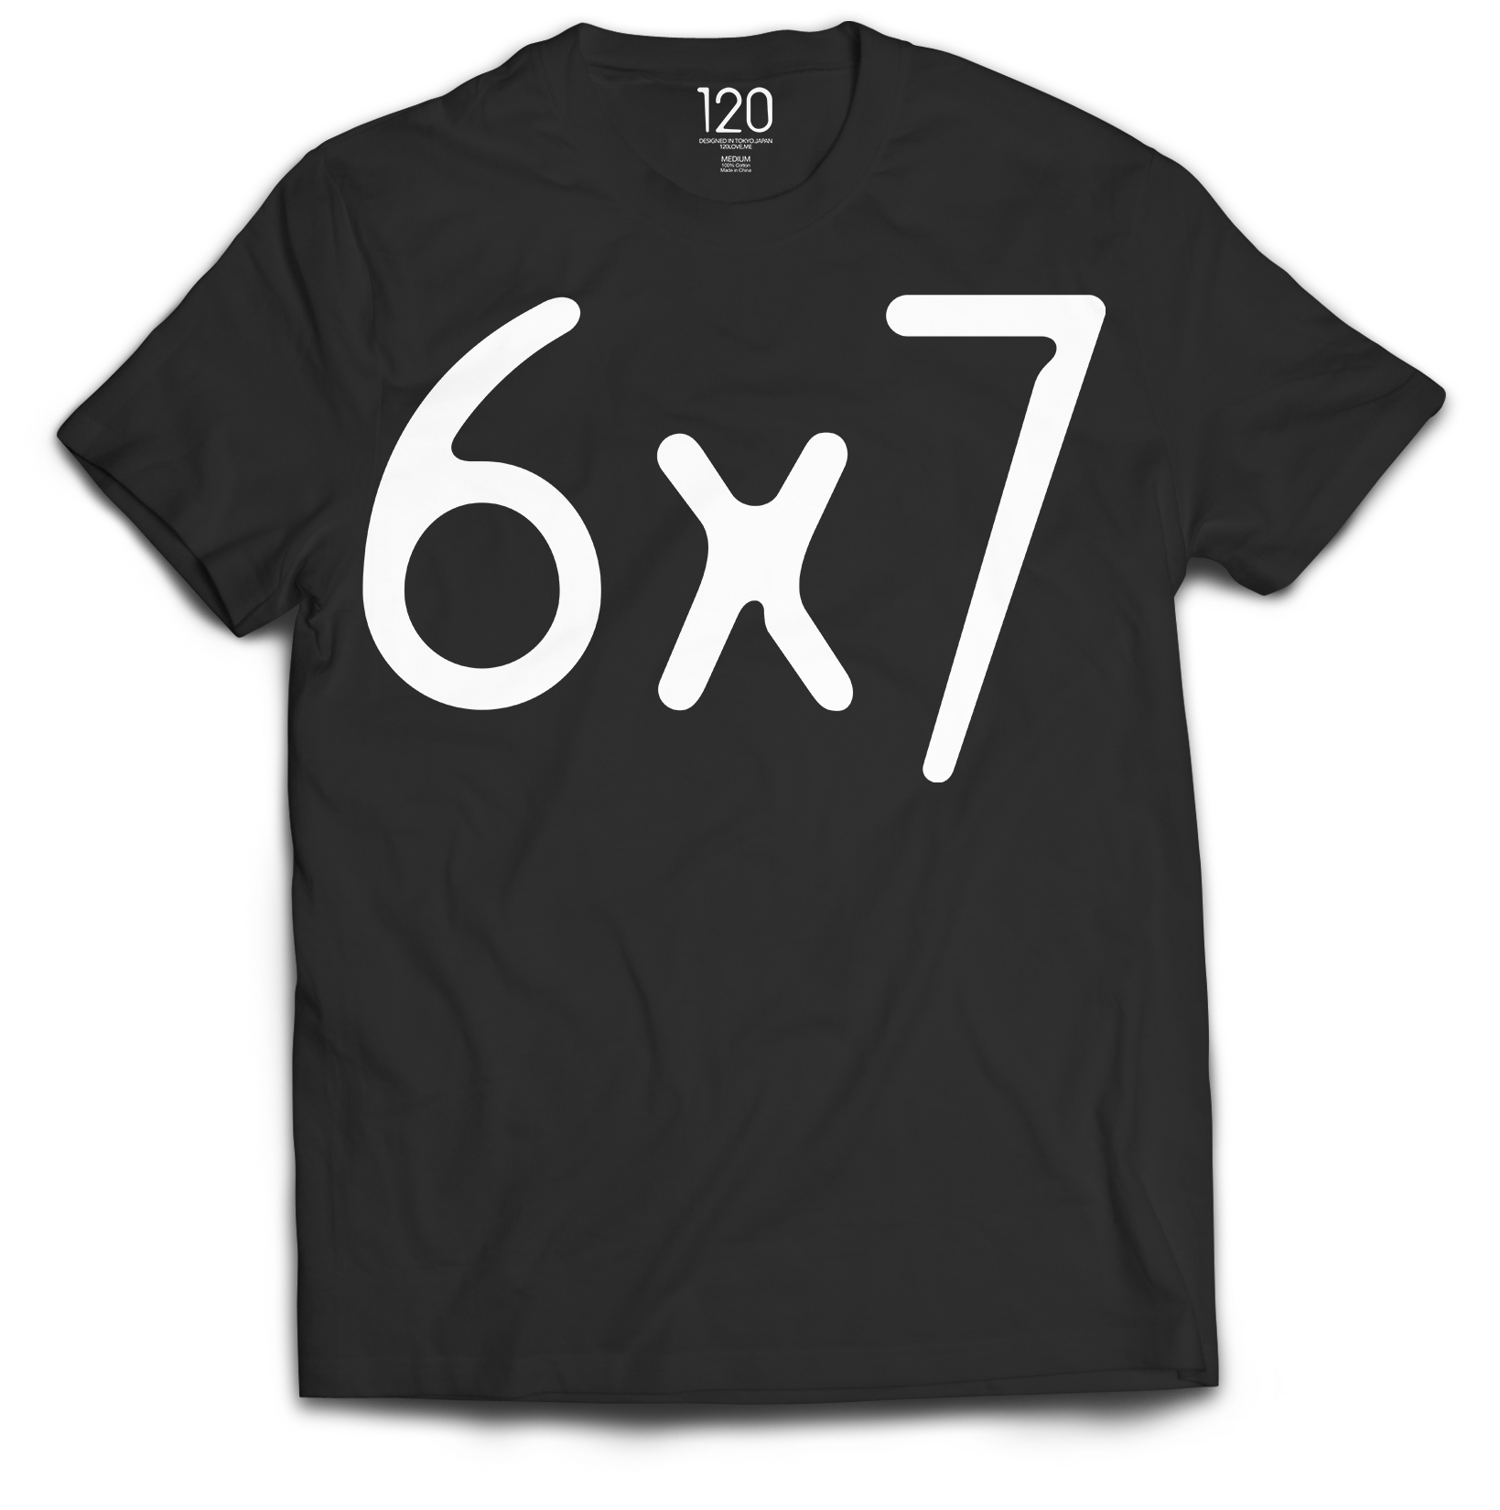 120 LOVE - Original 6x7 T-shirt